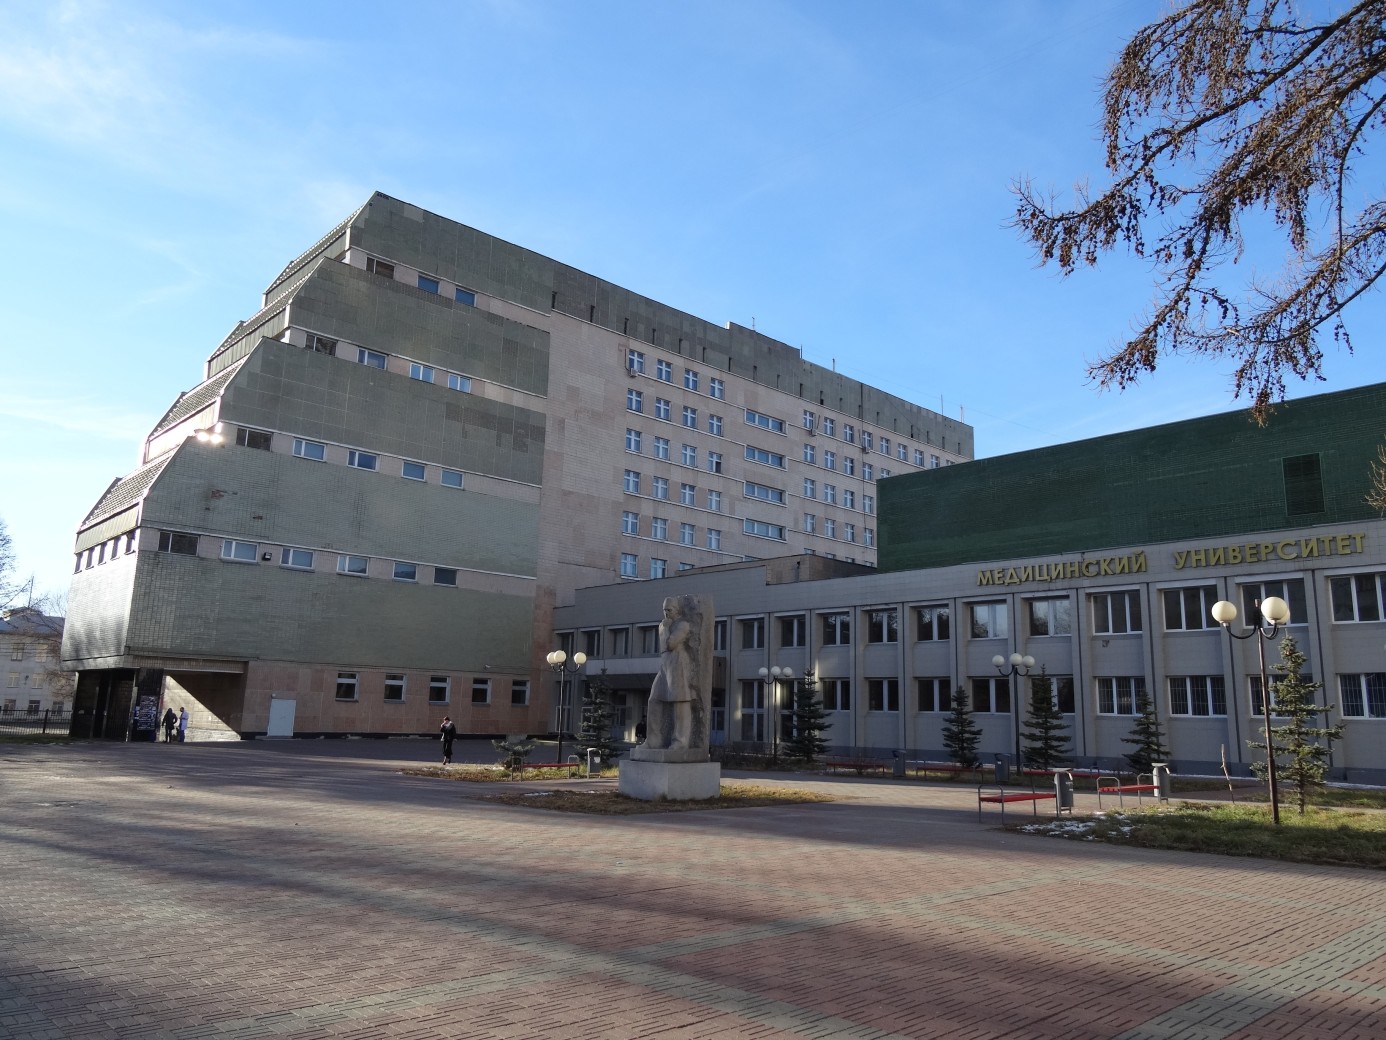 ЮУГМУ – Южно-Уральский государственный медицинский университет